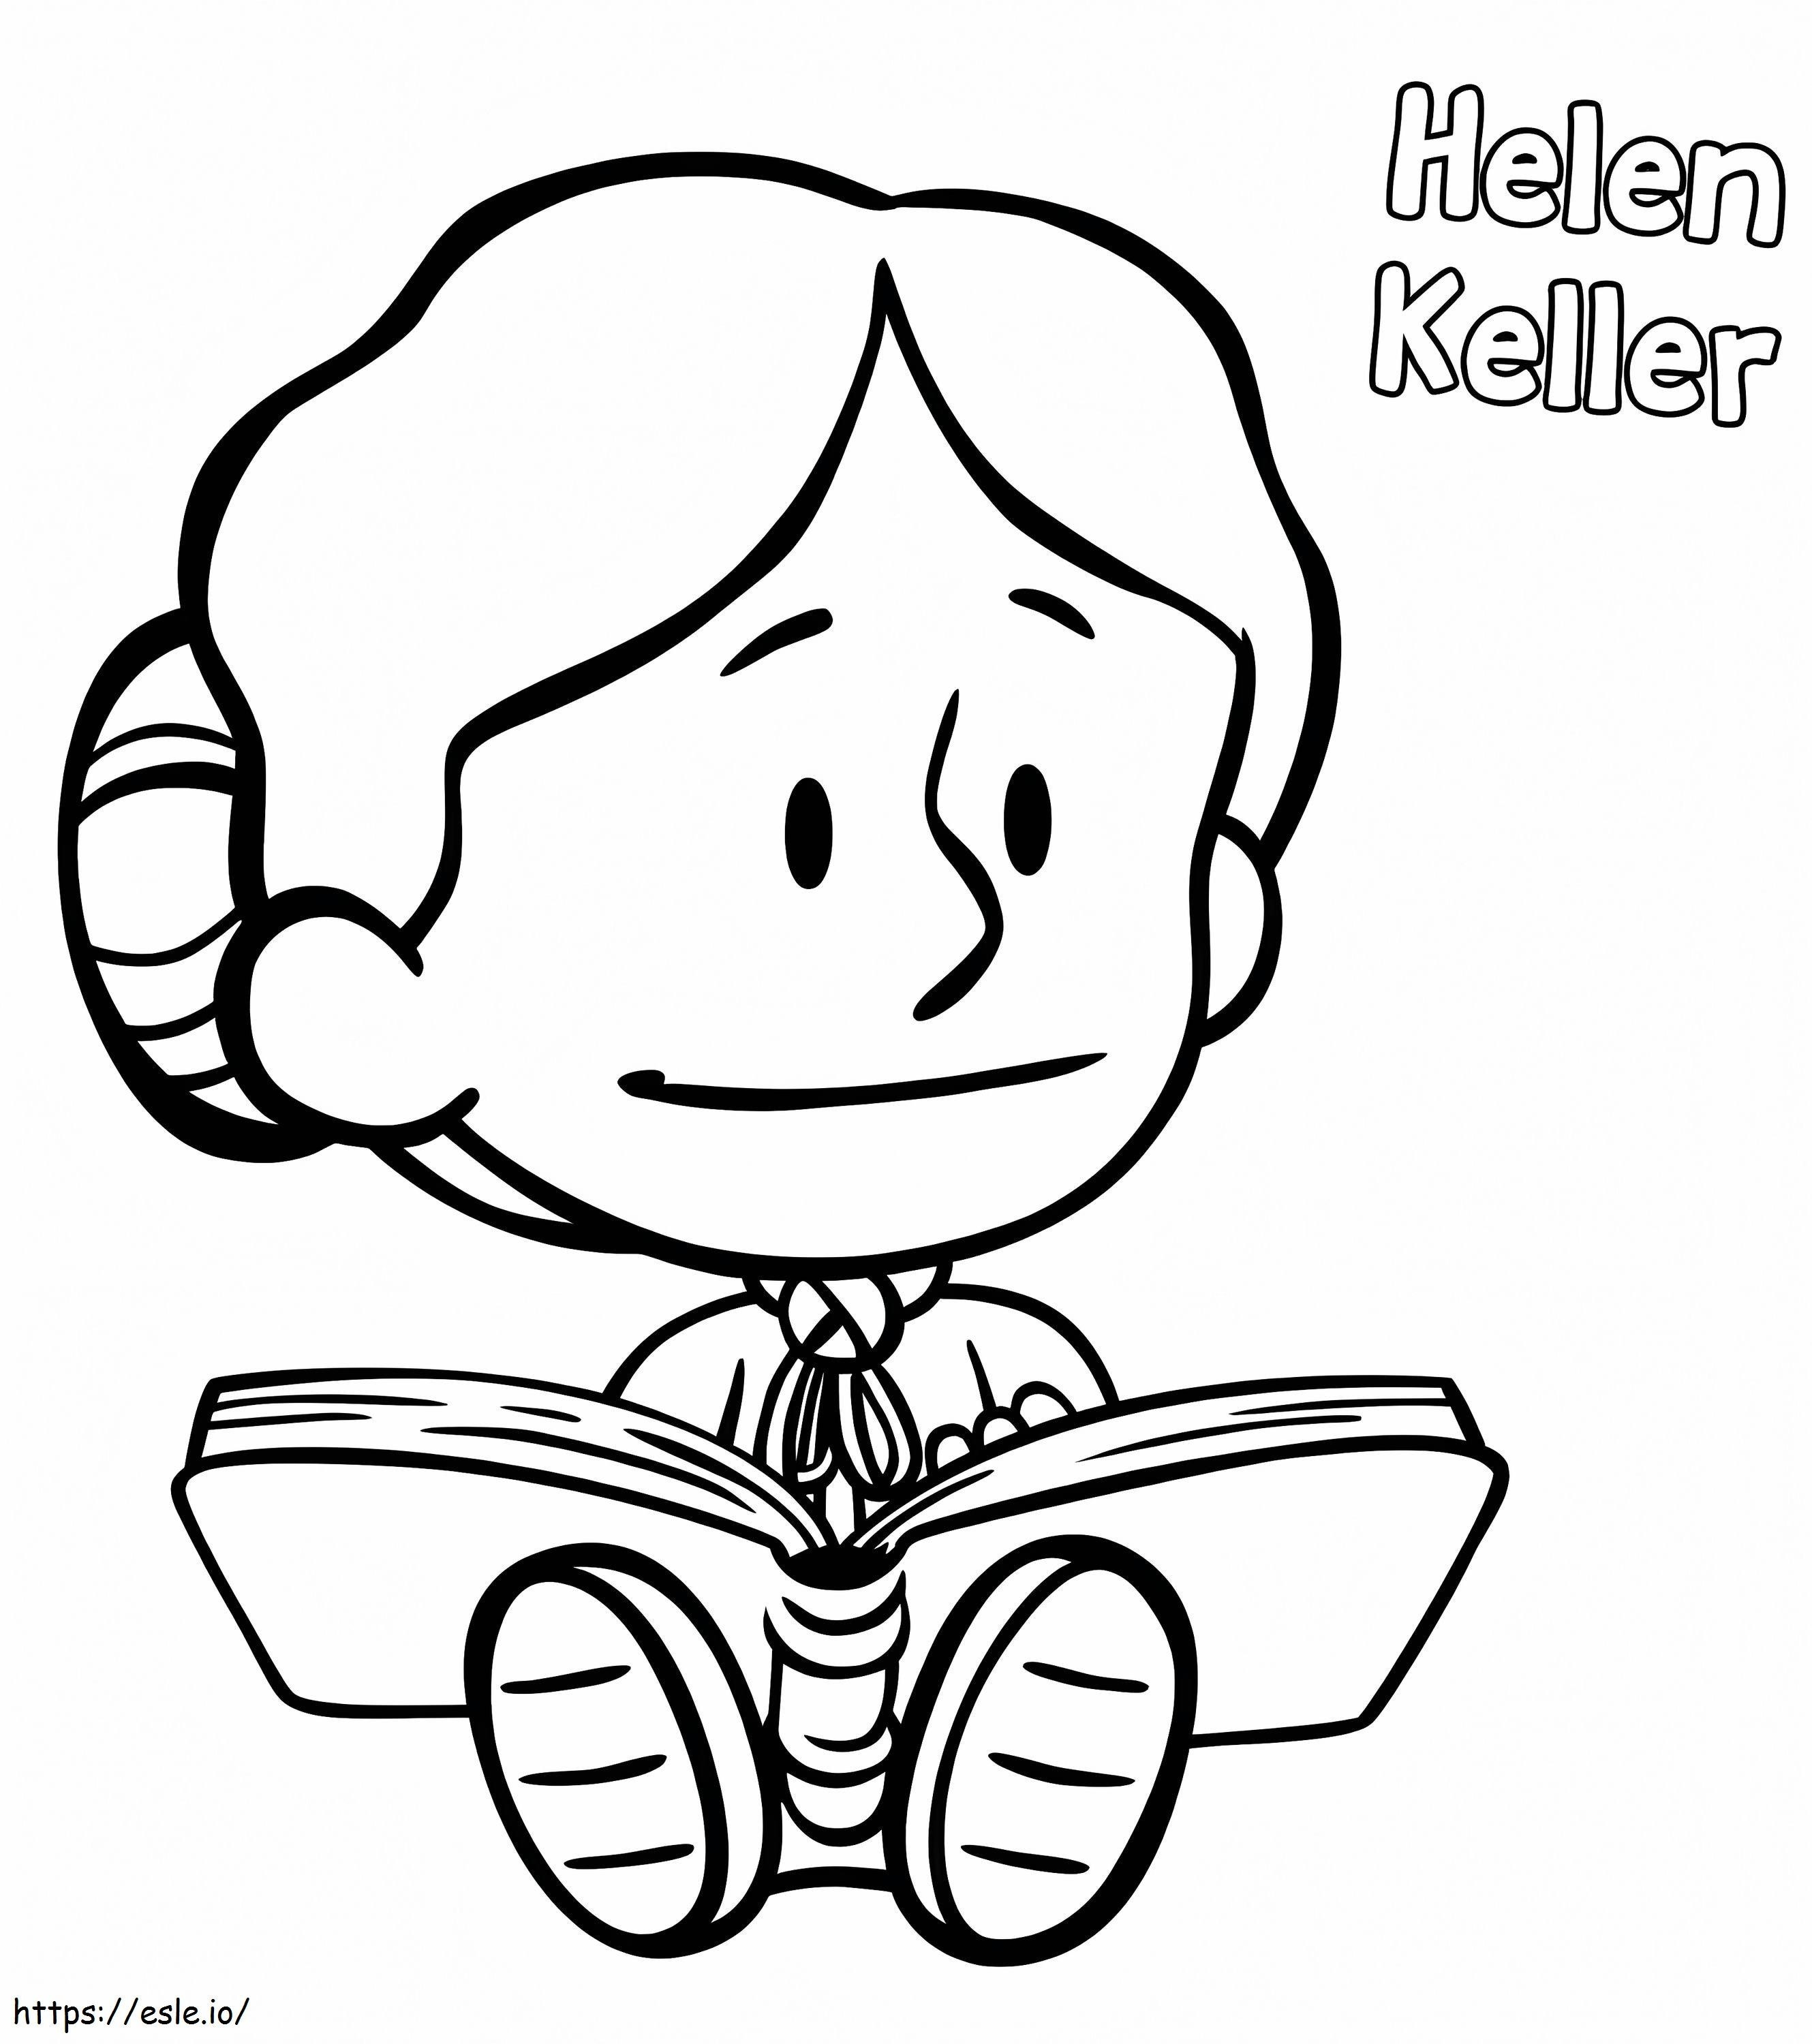 Helen Keller Da Xavier Riddle da colorare